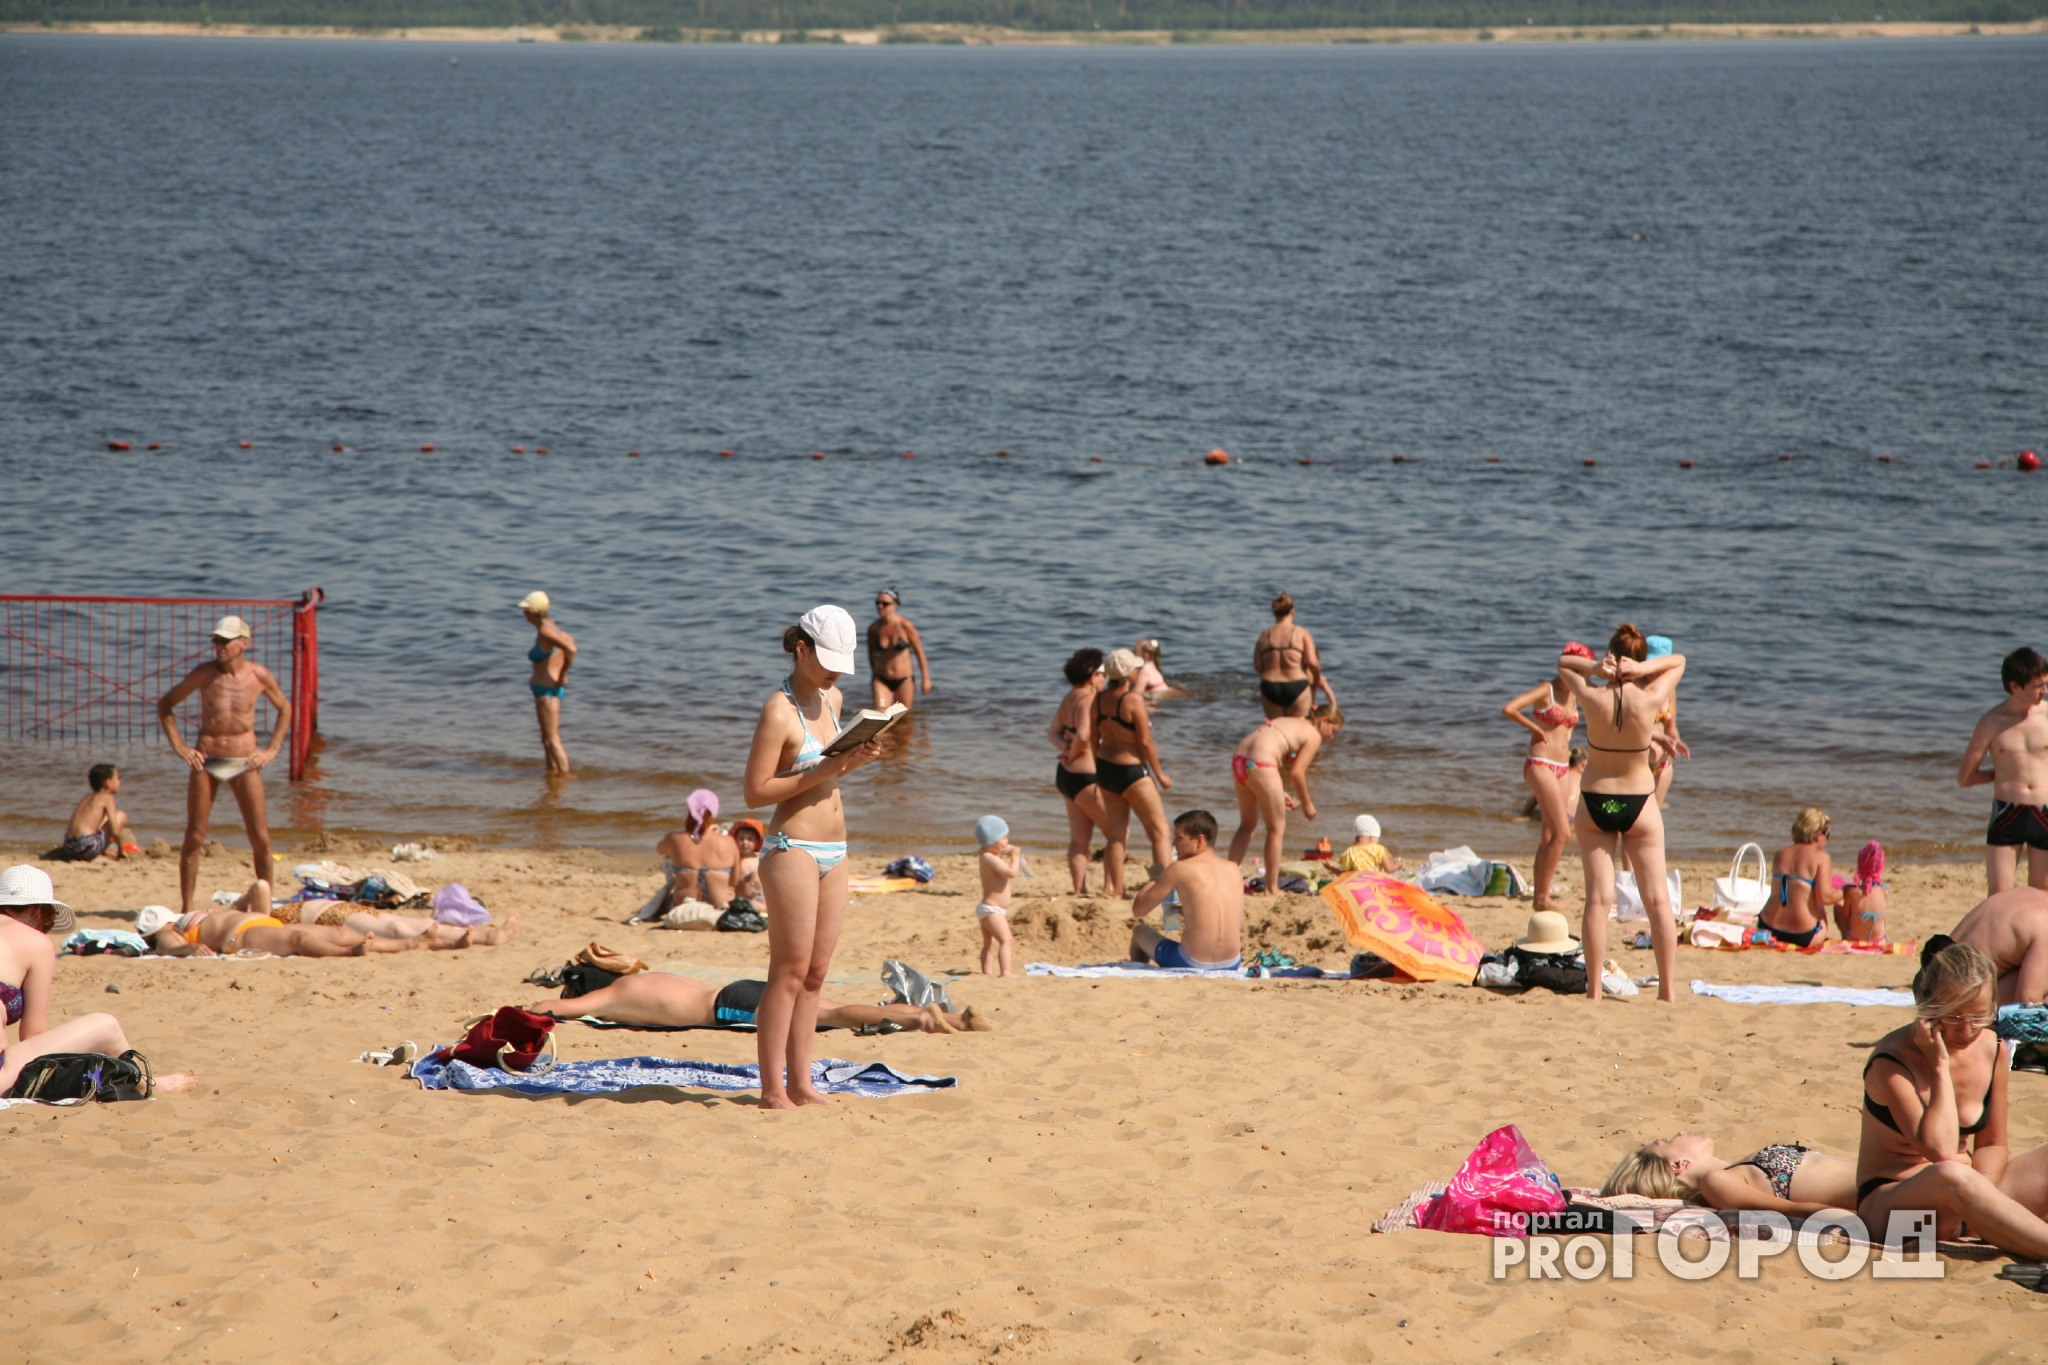 Стало известно, когда в Кирове официально откроют городской пляж